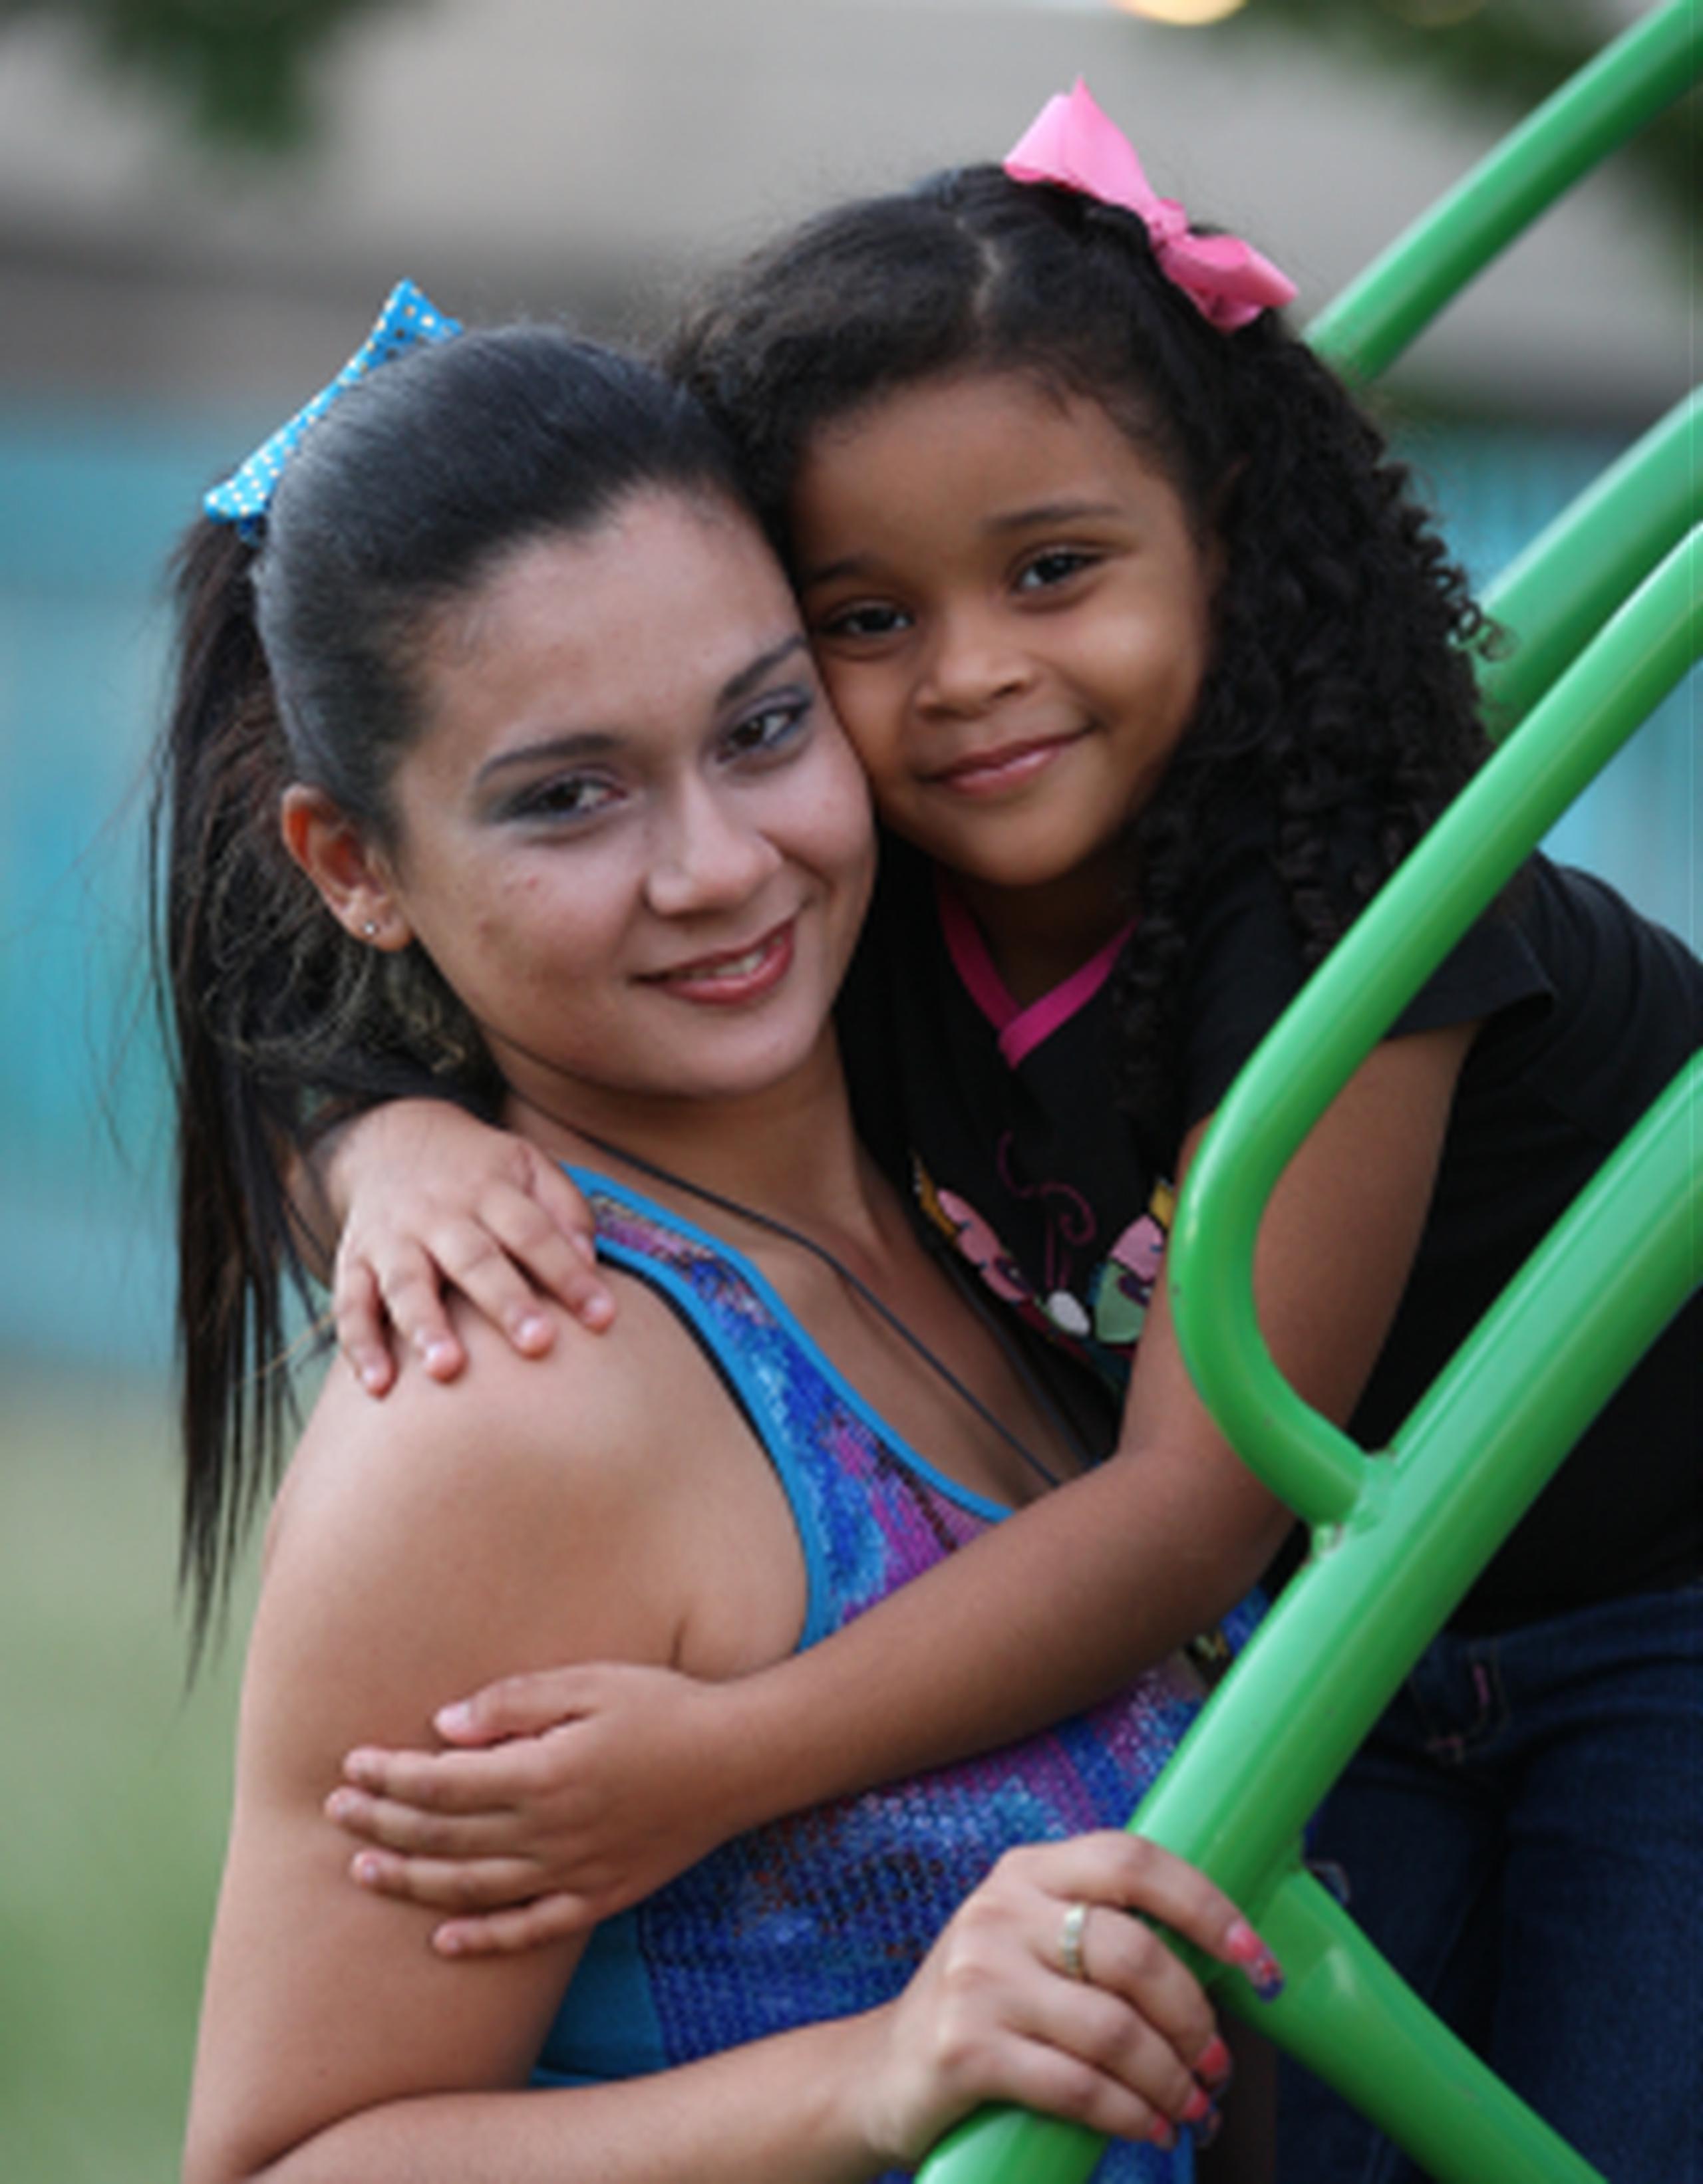 La pequeña de  cinco años Jeryanne Calderón tiene claro que “las balas matan y ponen a las personas tristes”. En la foto, la acompaña su madre Thaíri Pérez.(jose.candelaria@gfrmedia.com)